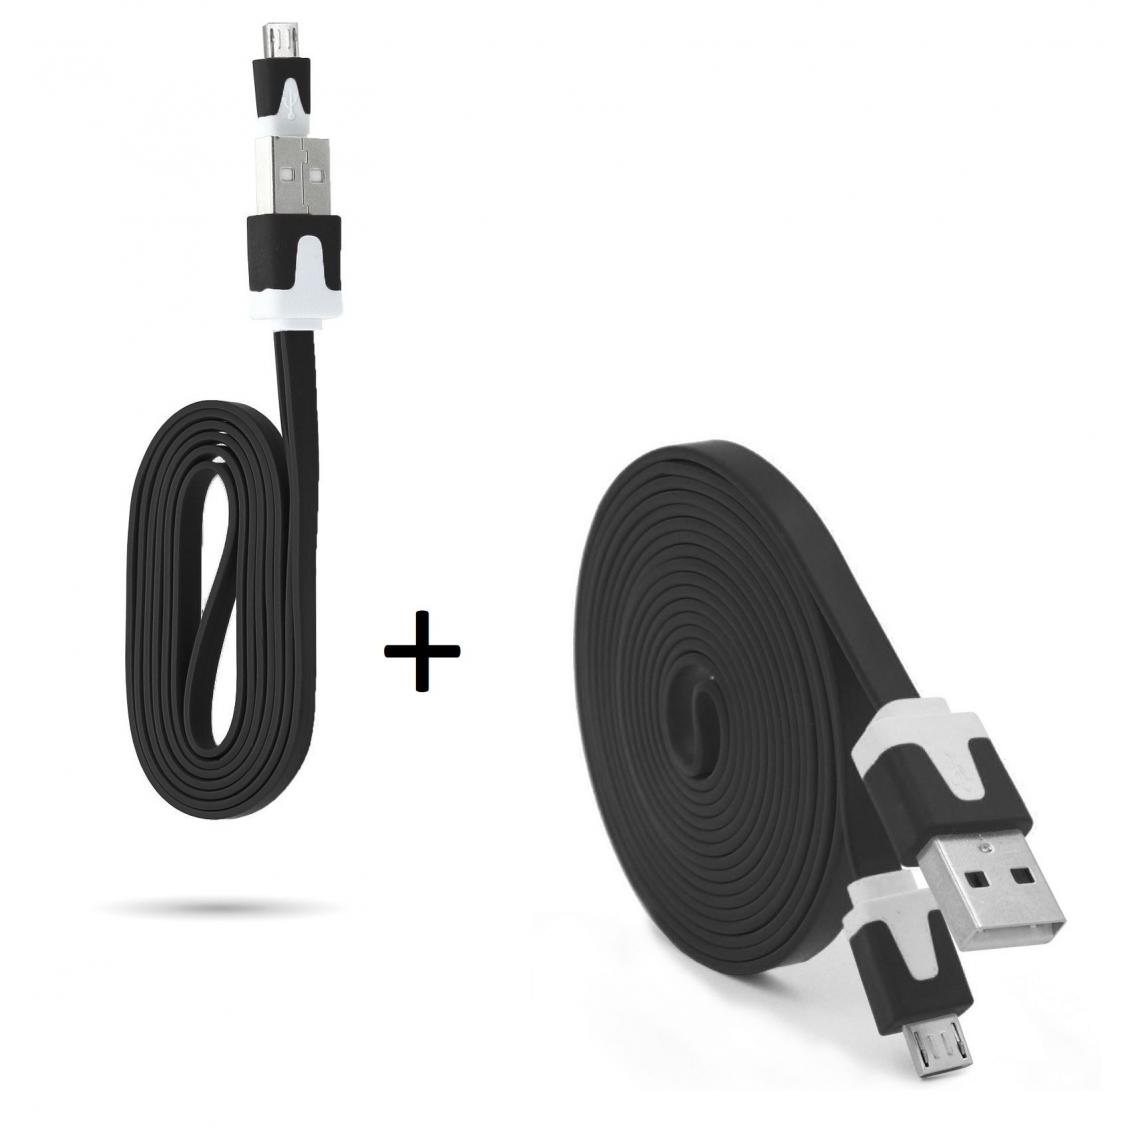 Shot - Pack Chargeur pour XIAOMI Redmi S2 Smartphone Micro USB (Cable Noodle 3m + Cable Noodle 1m) Android (NOIR) - Chargeur secteur téléphone